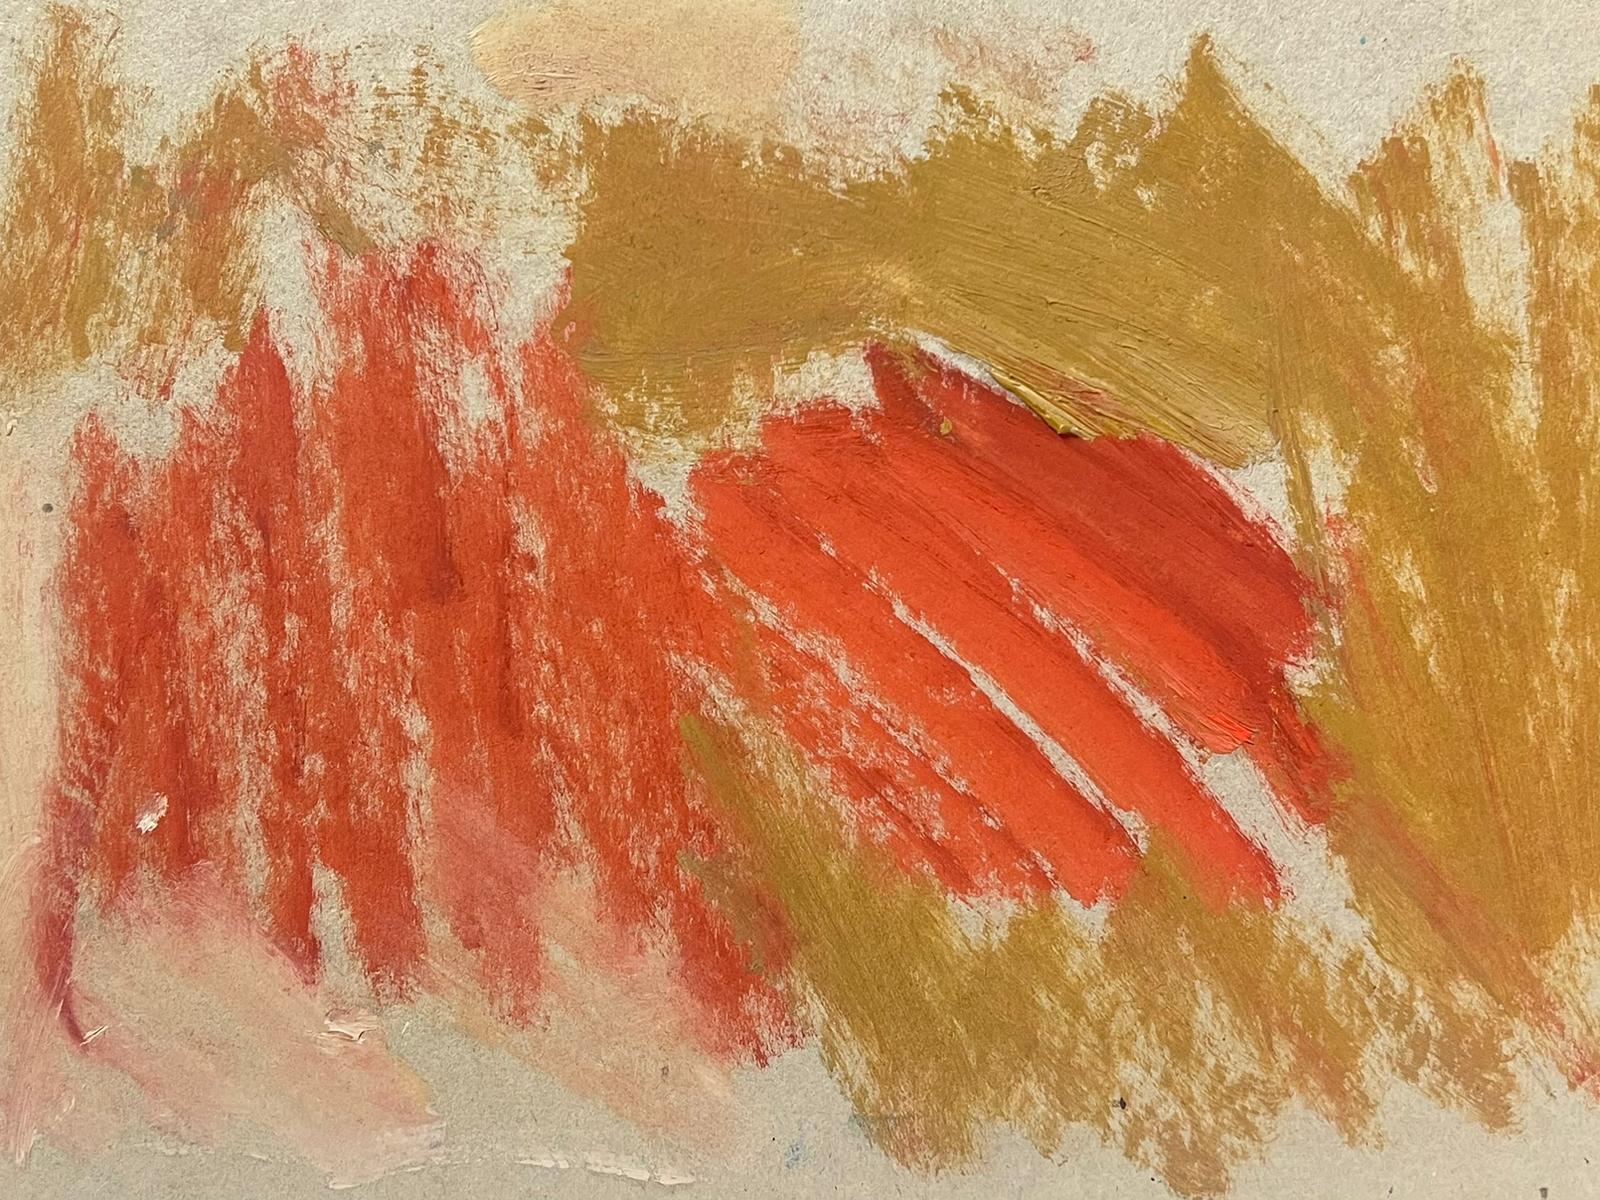 Deutsches modernistisches Ölgemälde des 20. Jahrhunderts, Orange und Rot, Abstrakt (Moderne), Painting, von Elisabeth Hahn